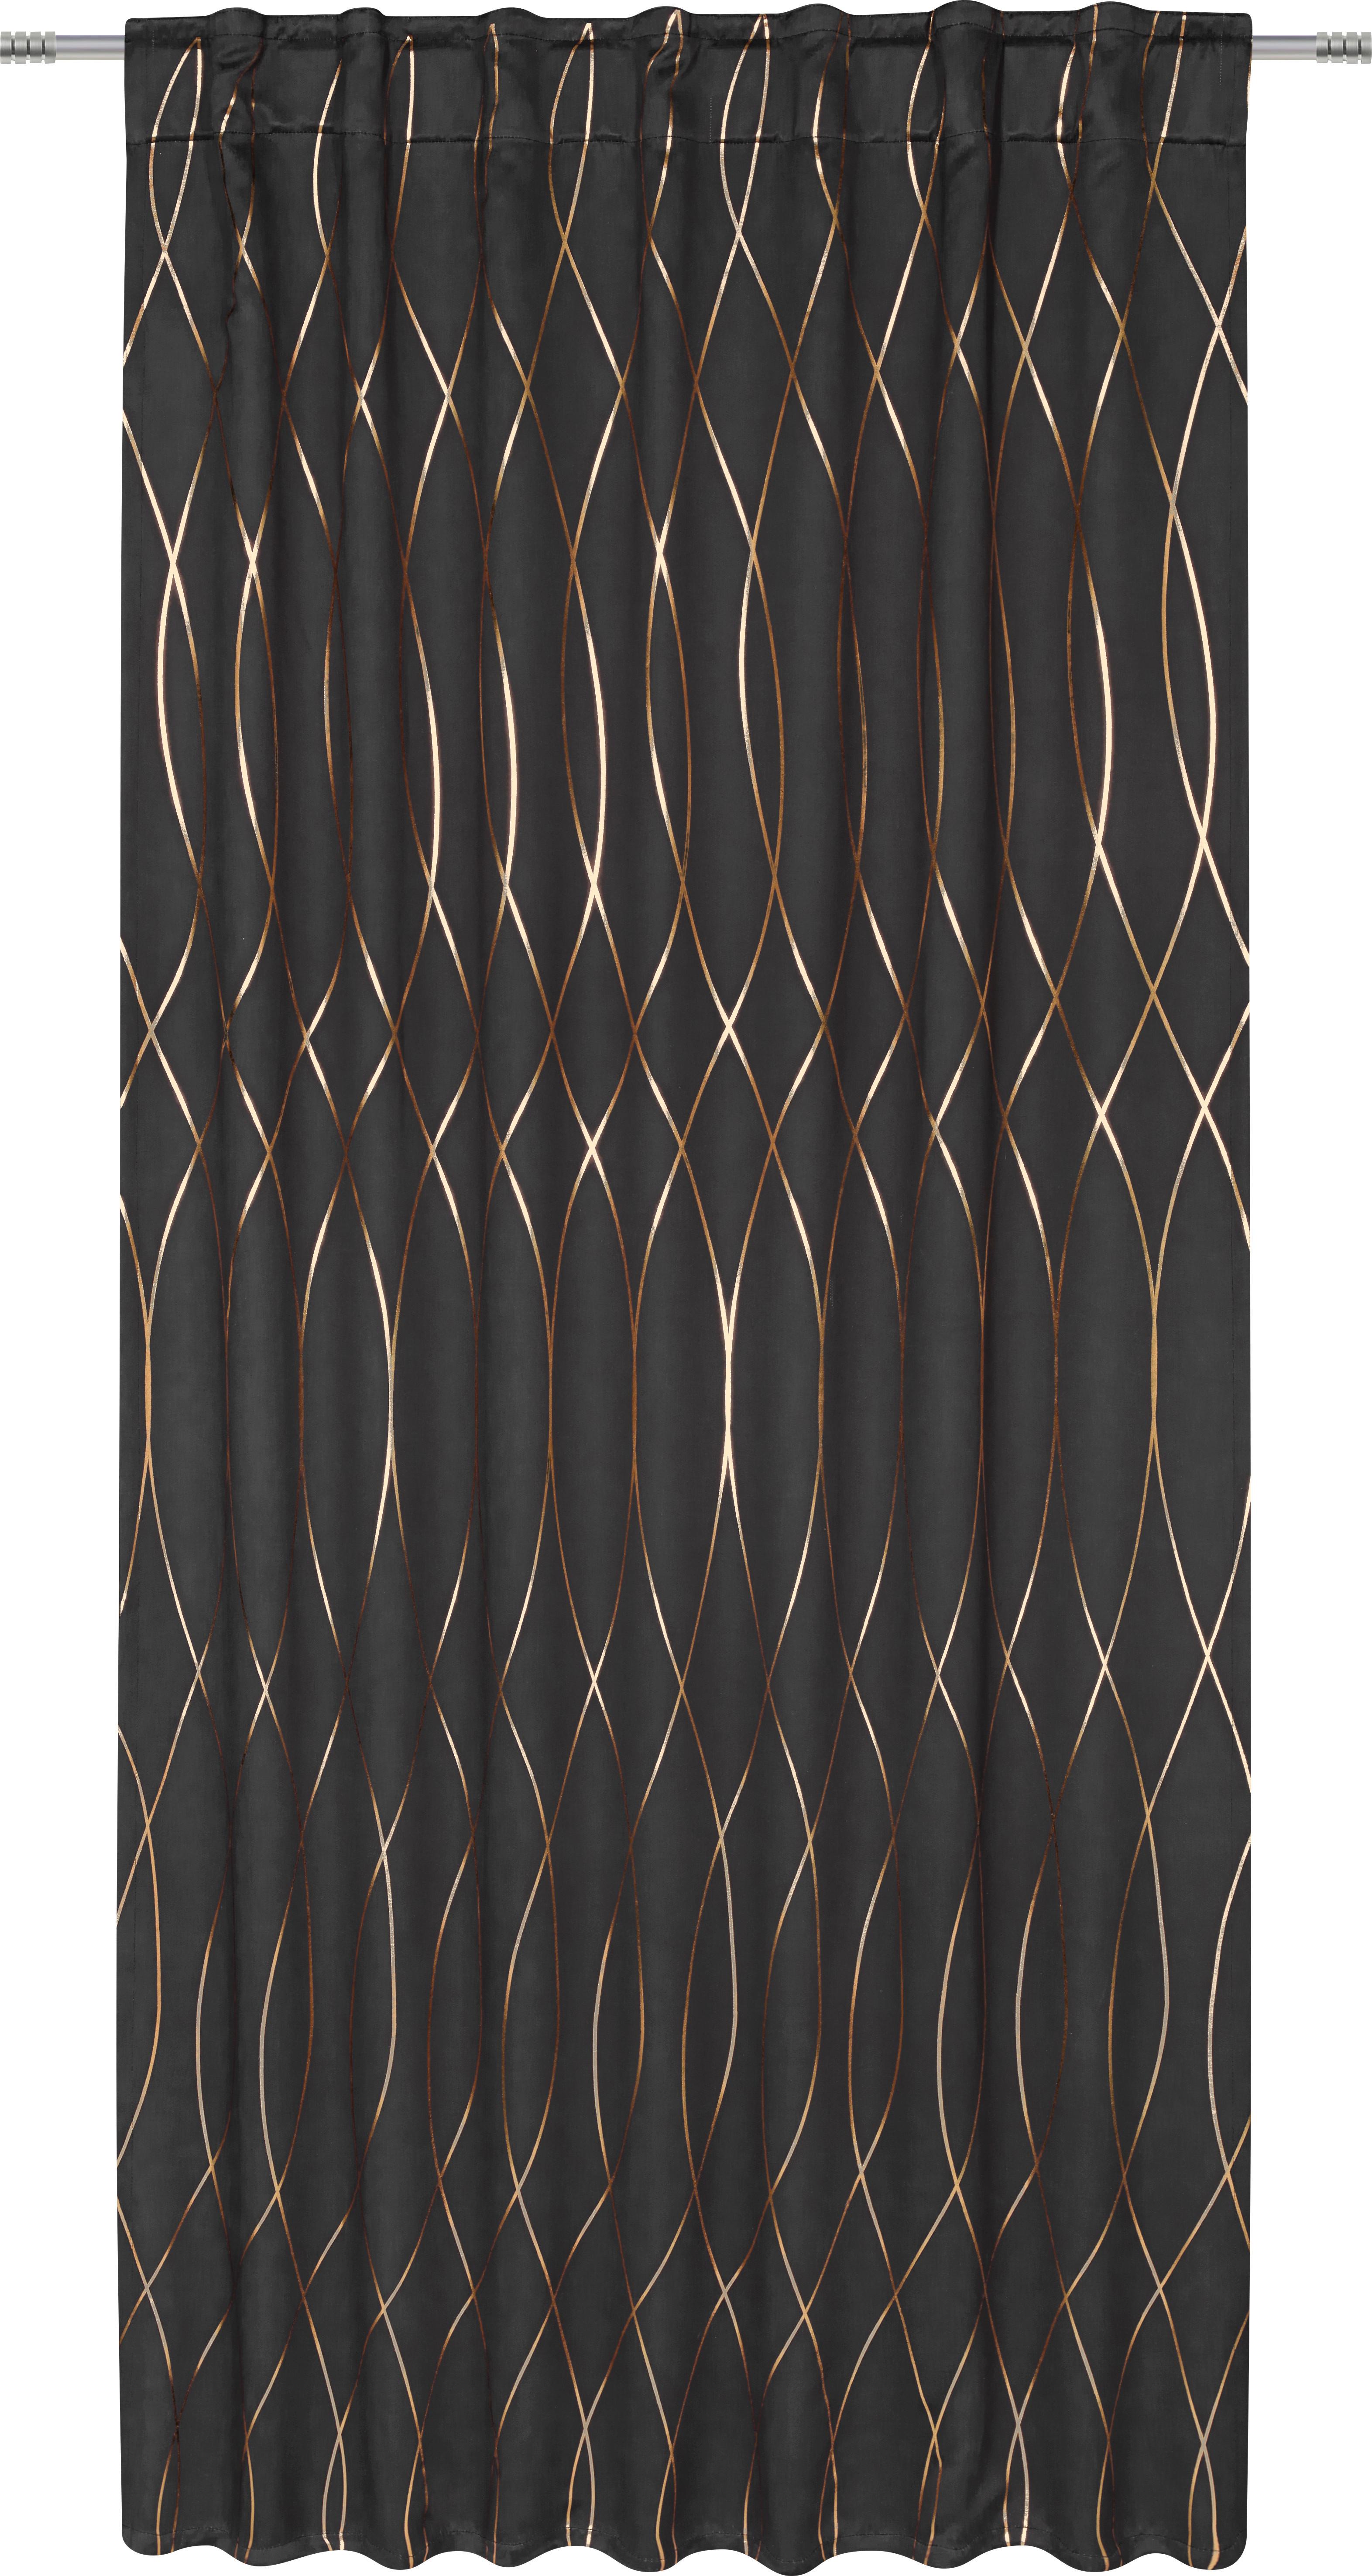 Zatemnitvena Zavesa Glamour -Akt- - črna/barve bakra, Trendi, tekstil (140/245cm) - Modern Living